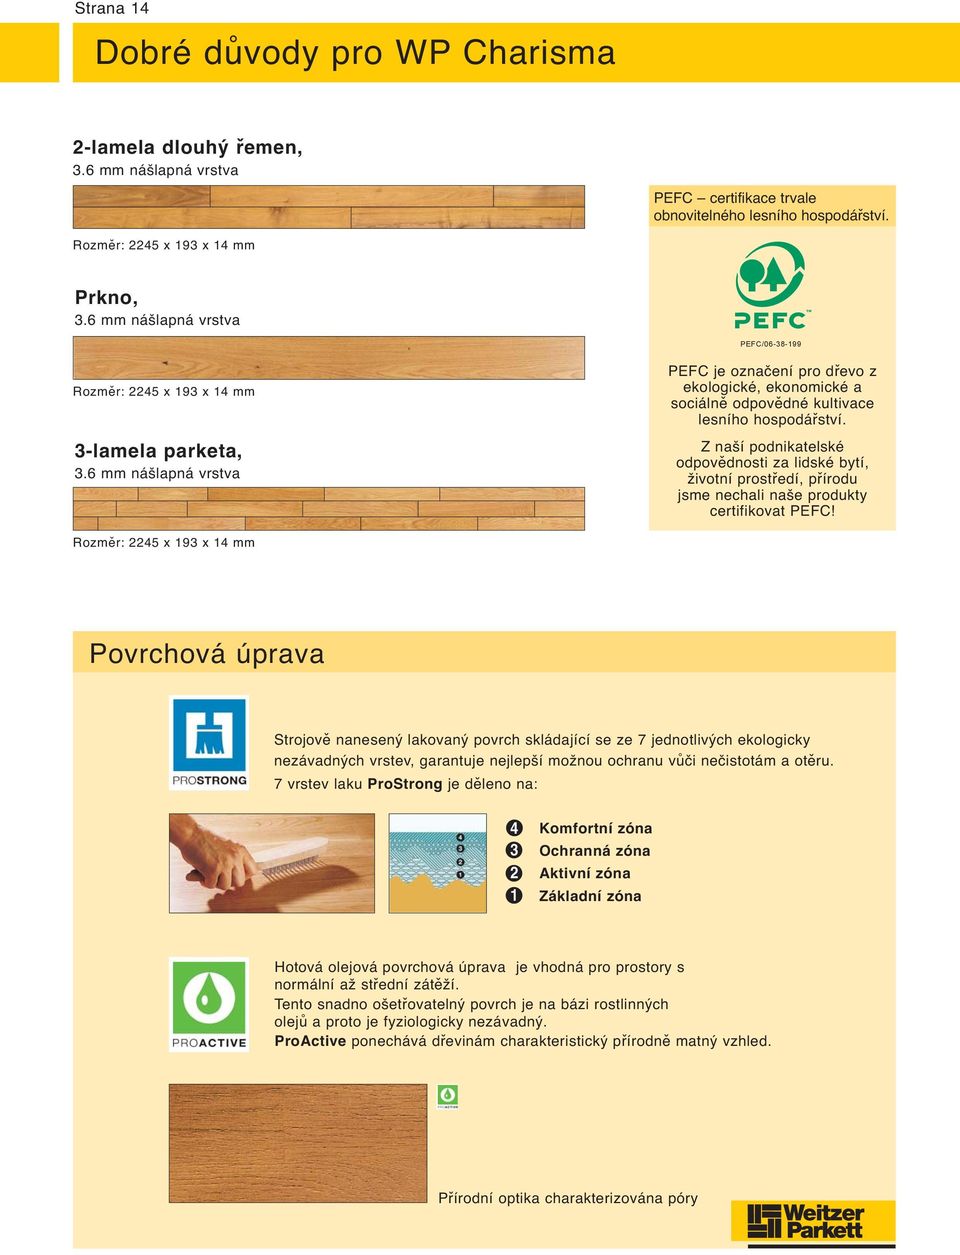 6 mm nášlapná vrstva PEFC je označení pro dřevo z ekologické, ekonomické a sociálně odpovědné kultivace lesního hospodářství.